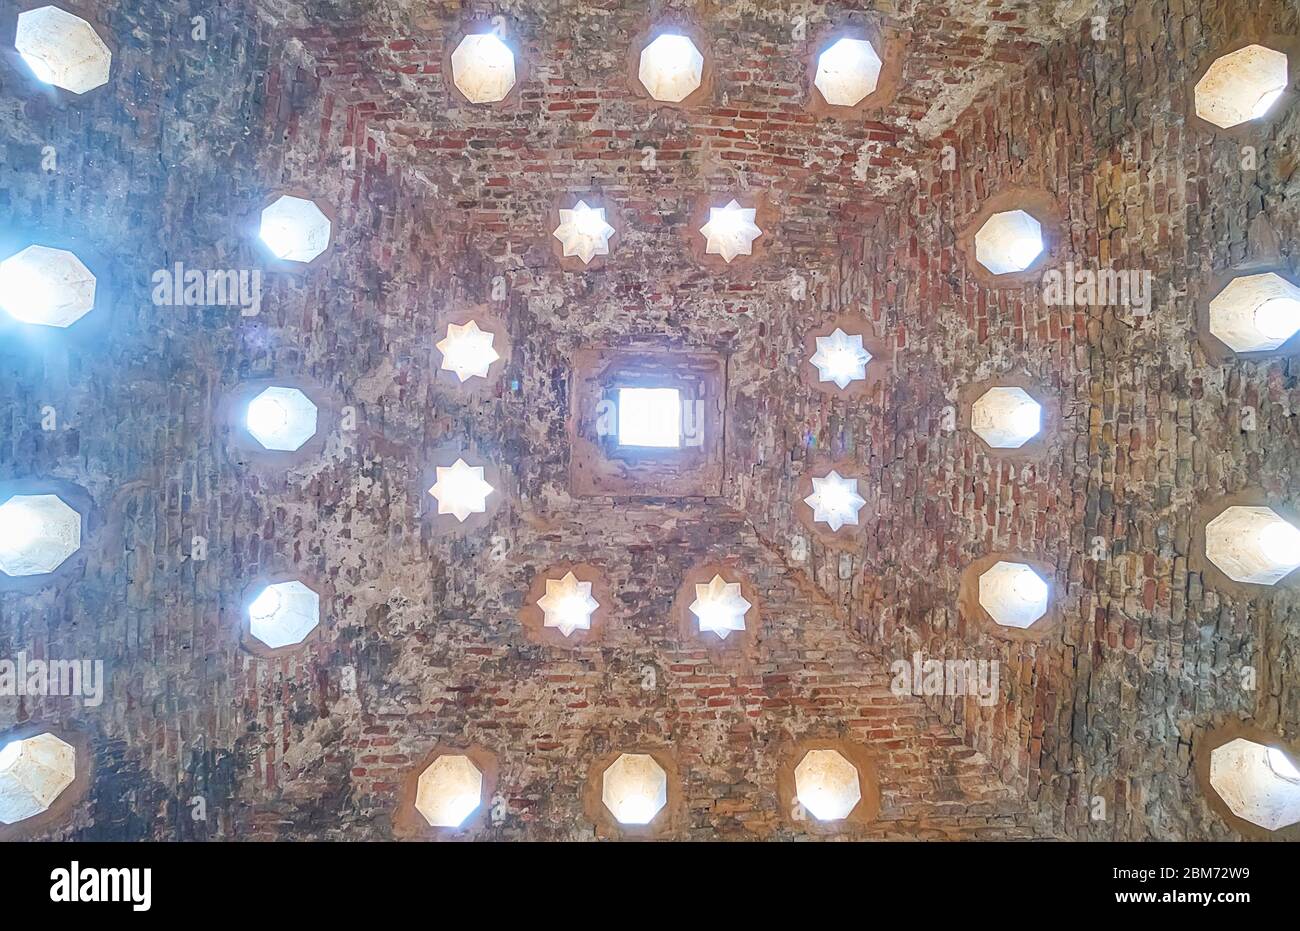 GRANADA, ESPAÑA - 25 DE SEPTIEMBRE de 2019: El techo de la cálida sala de el Banuelo (baños árabes, hammam) está decorado con agujeros claros en la bóveda, en forma de sta Foto de stock